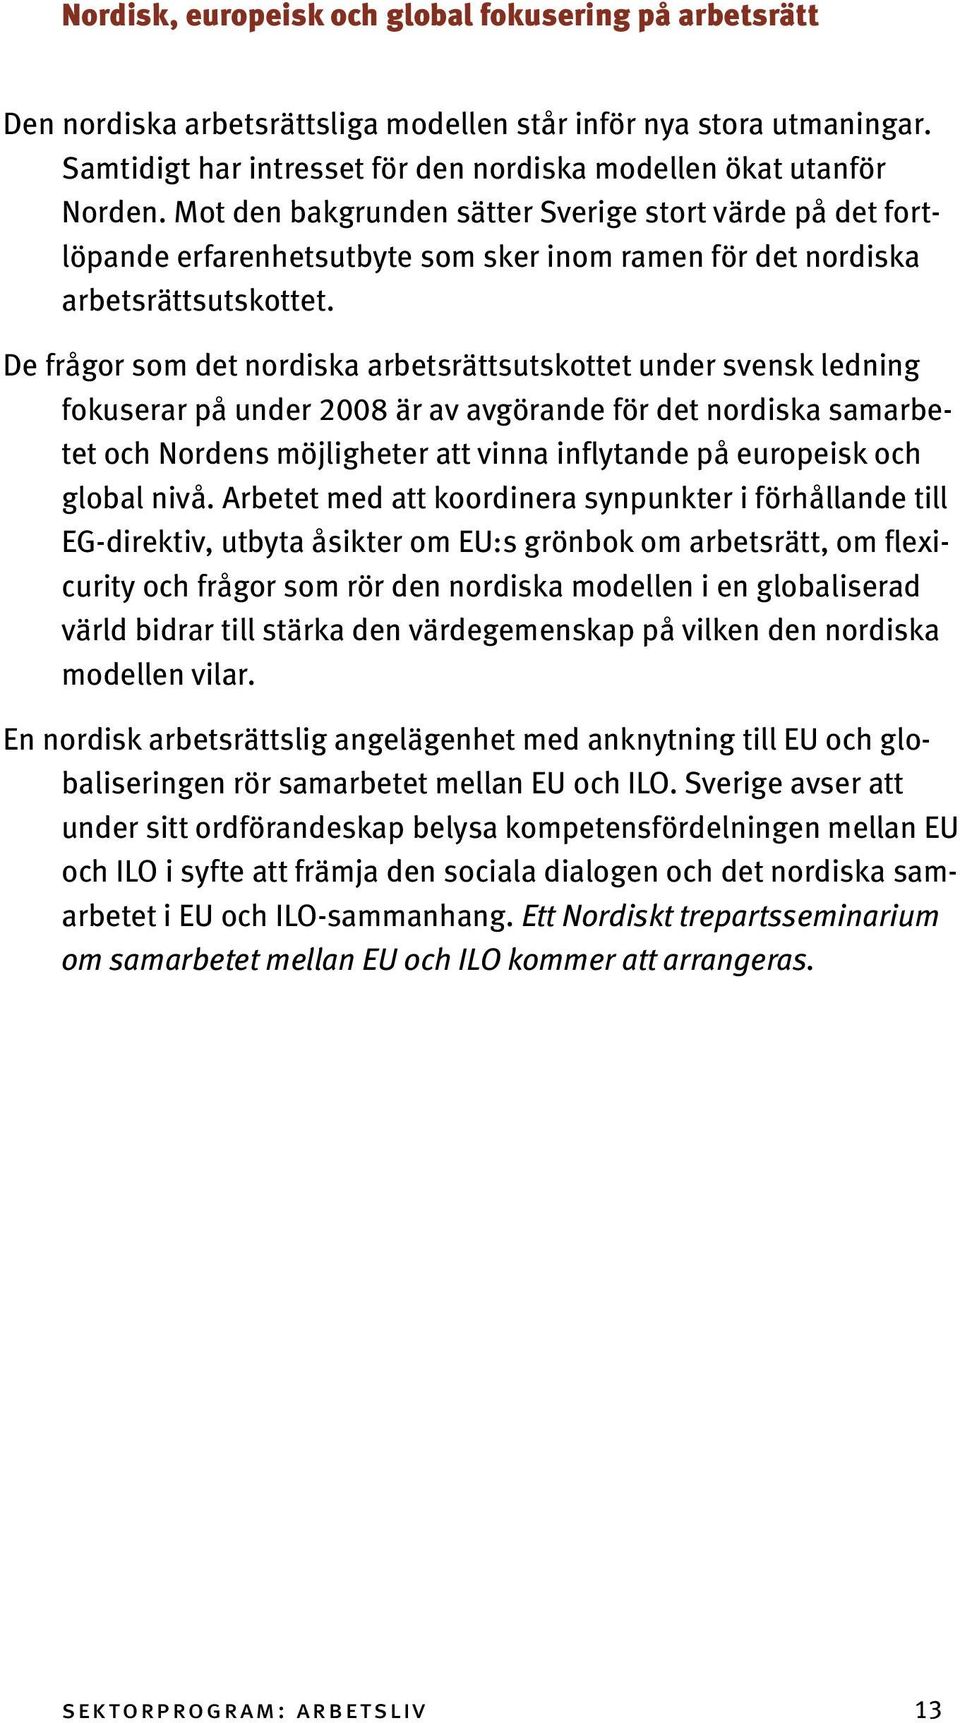 De frågor som det nordiska arbetsrättsutskottet under svensk ledning fokuserar på under 2008 är av avgörande för det nordiska samarbetet och Nordens möjligheter att vinna inflytande på europeisk och